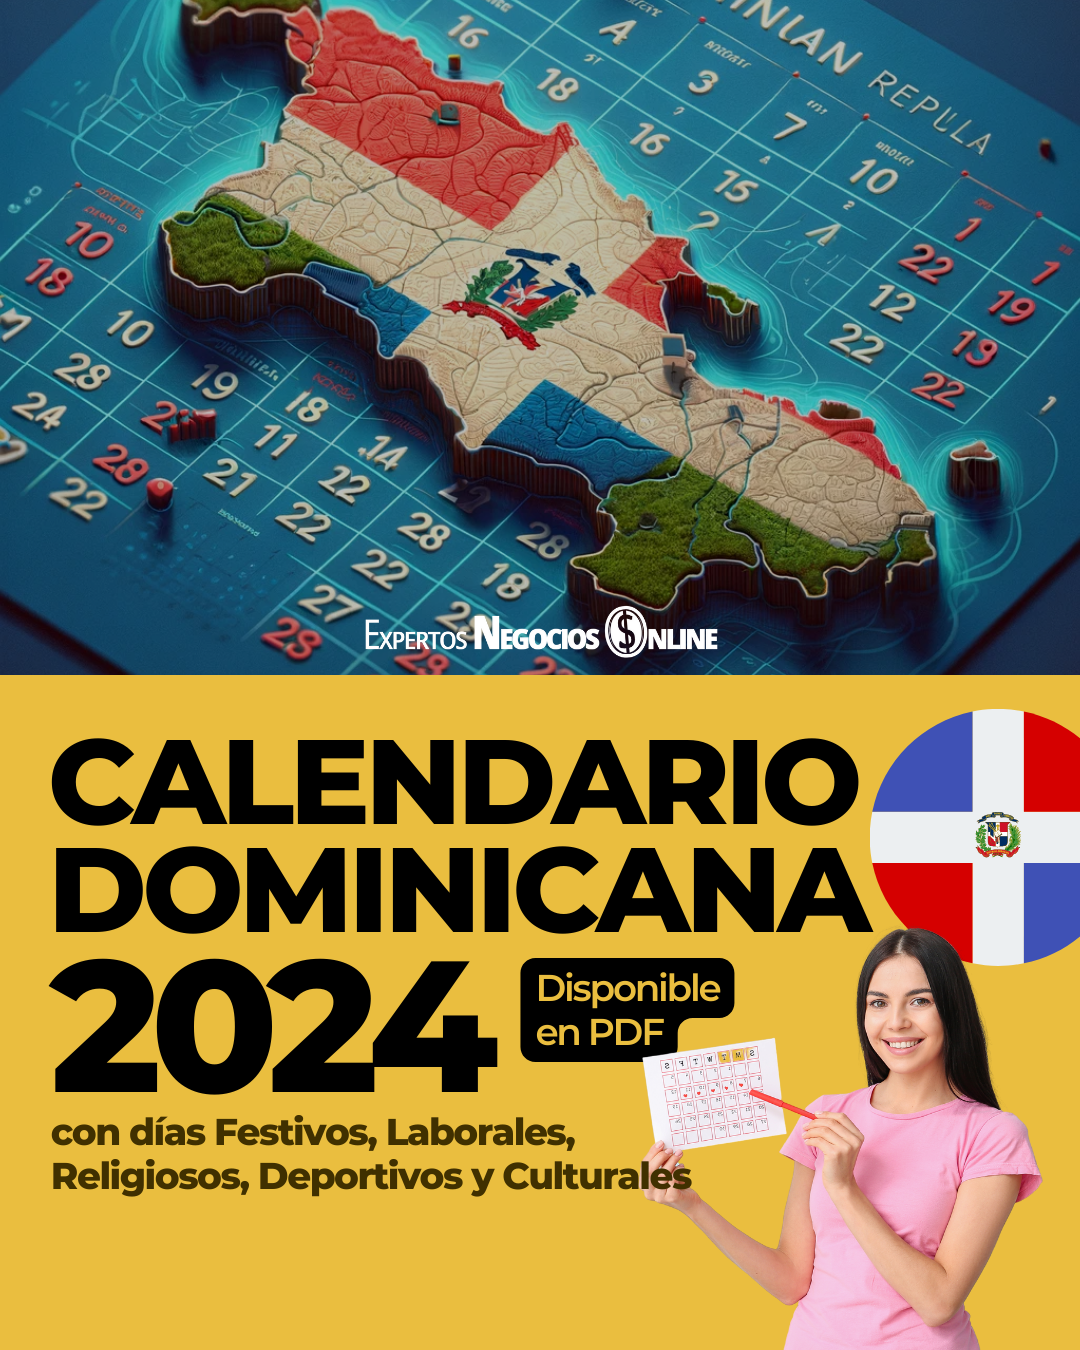 Calendario comercial 2024 Dominicana con festivos y importantes para Marketing y eCommerce